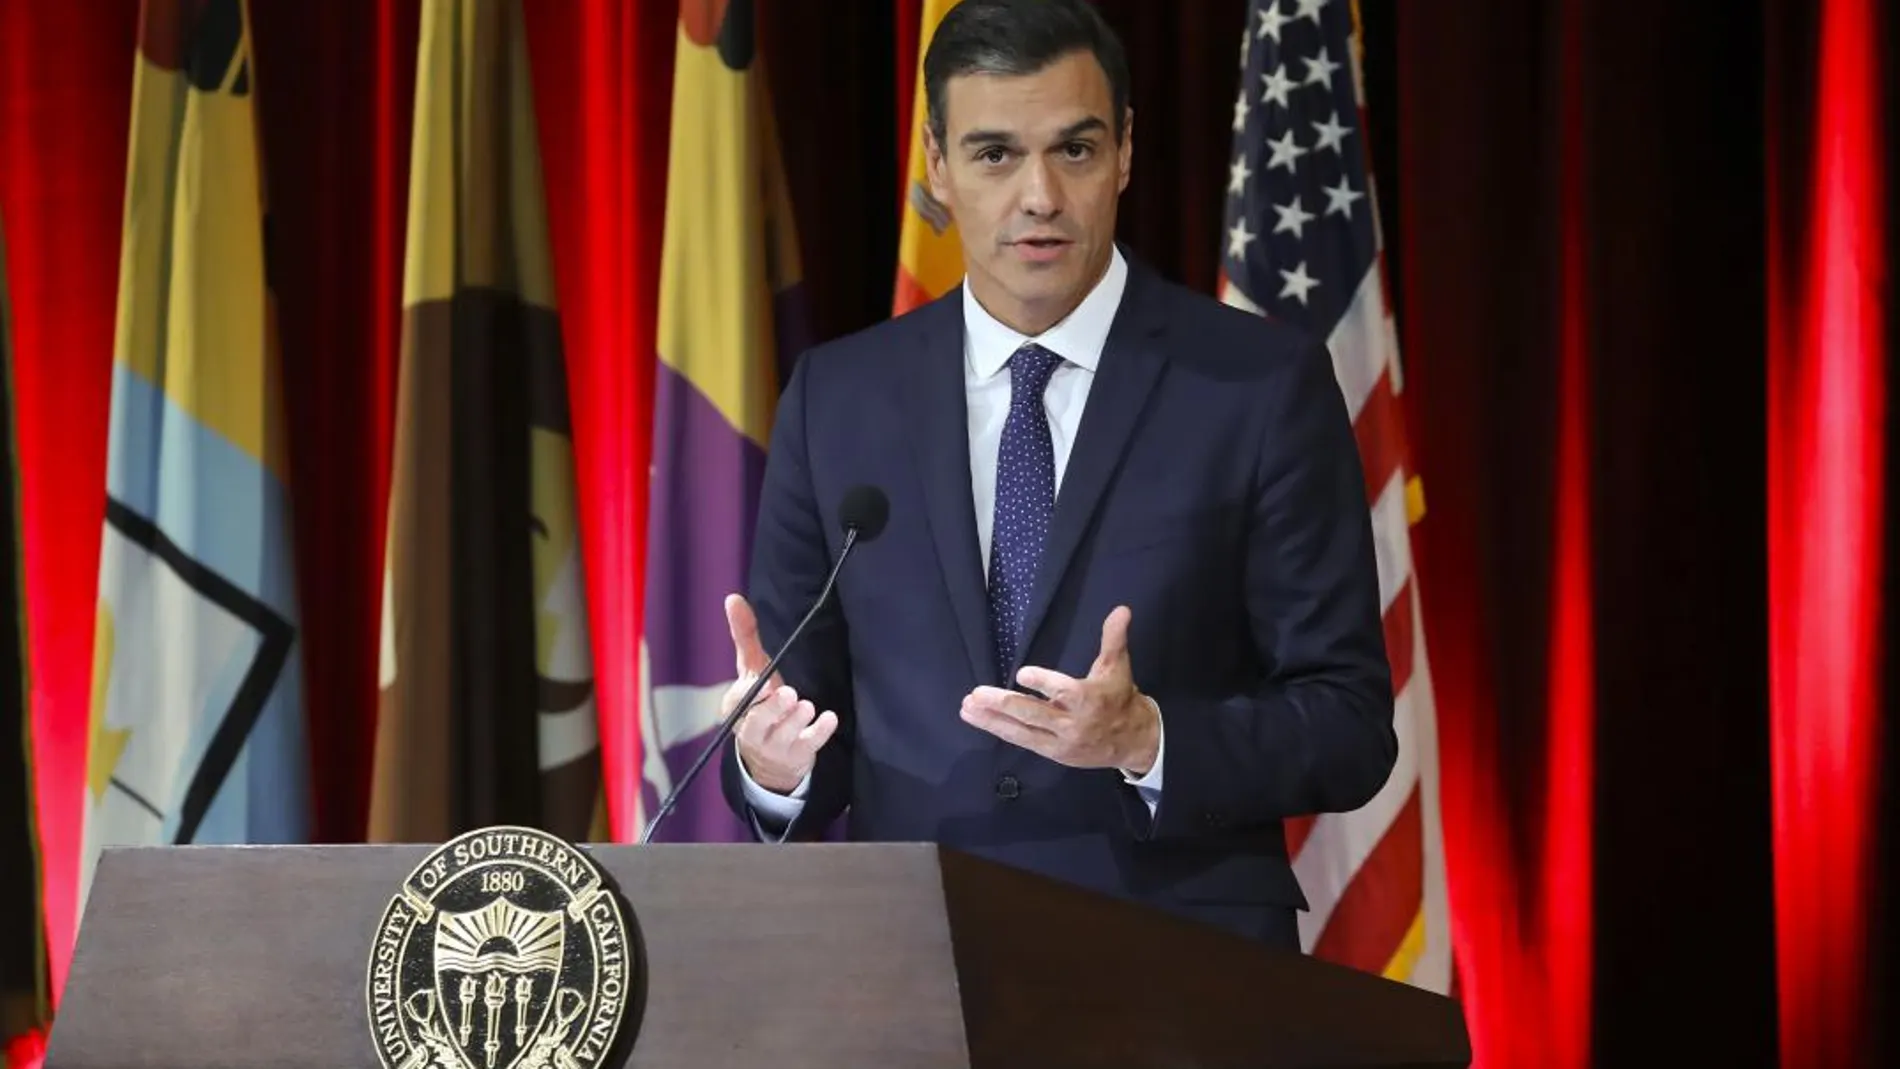 El presidente del Gobierno de España, Pedro Sánchez, interviene hoy, viernes 28 de septiembre de 2018, en el auditorio de la Universidad del Sur de California, en Los Ángeles, California (EEUU)